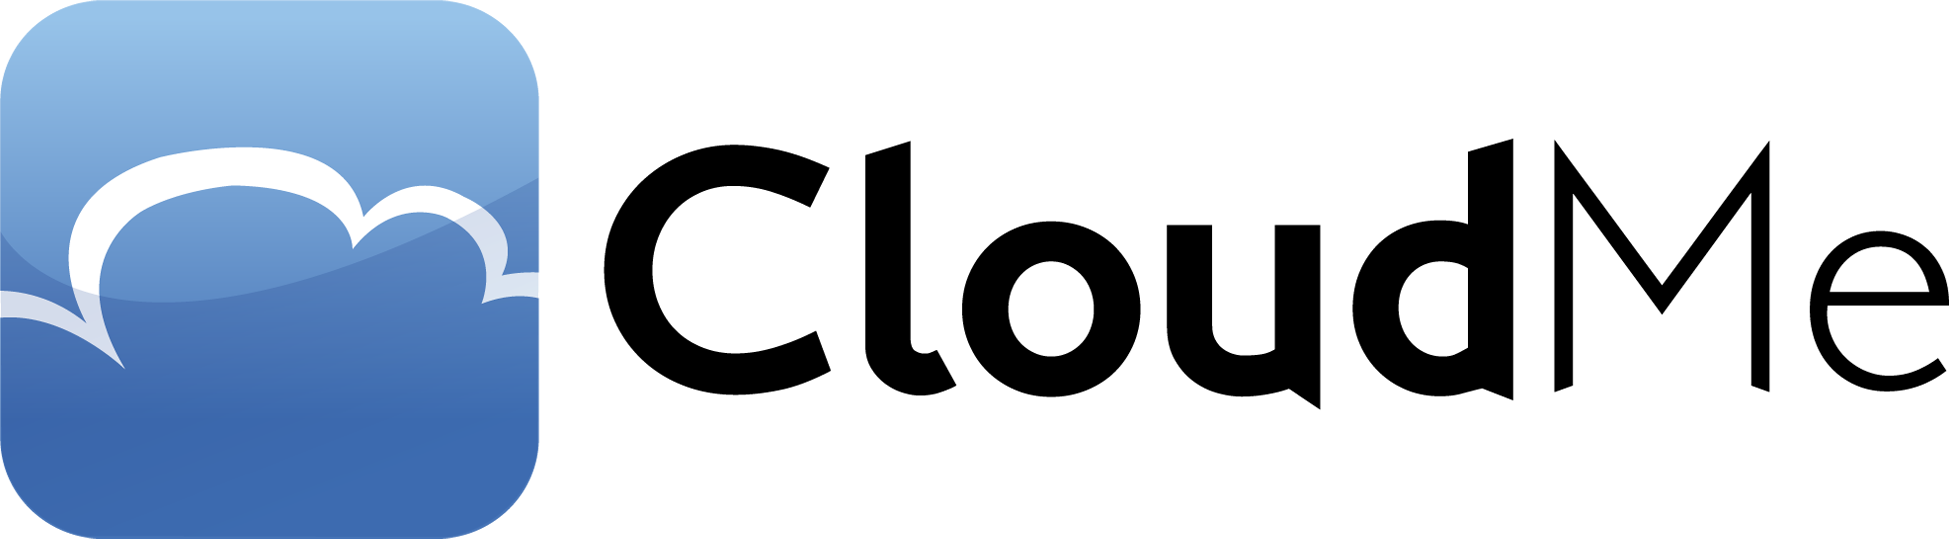 CloudMe_1950x540_BW